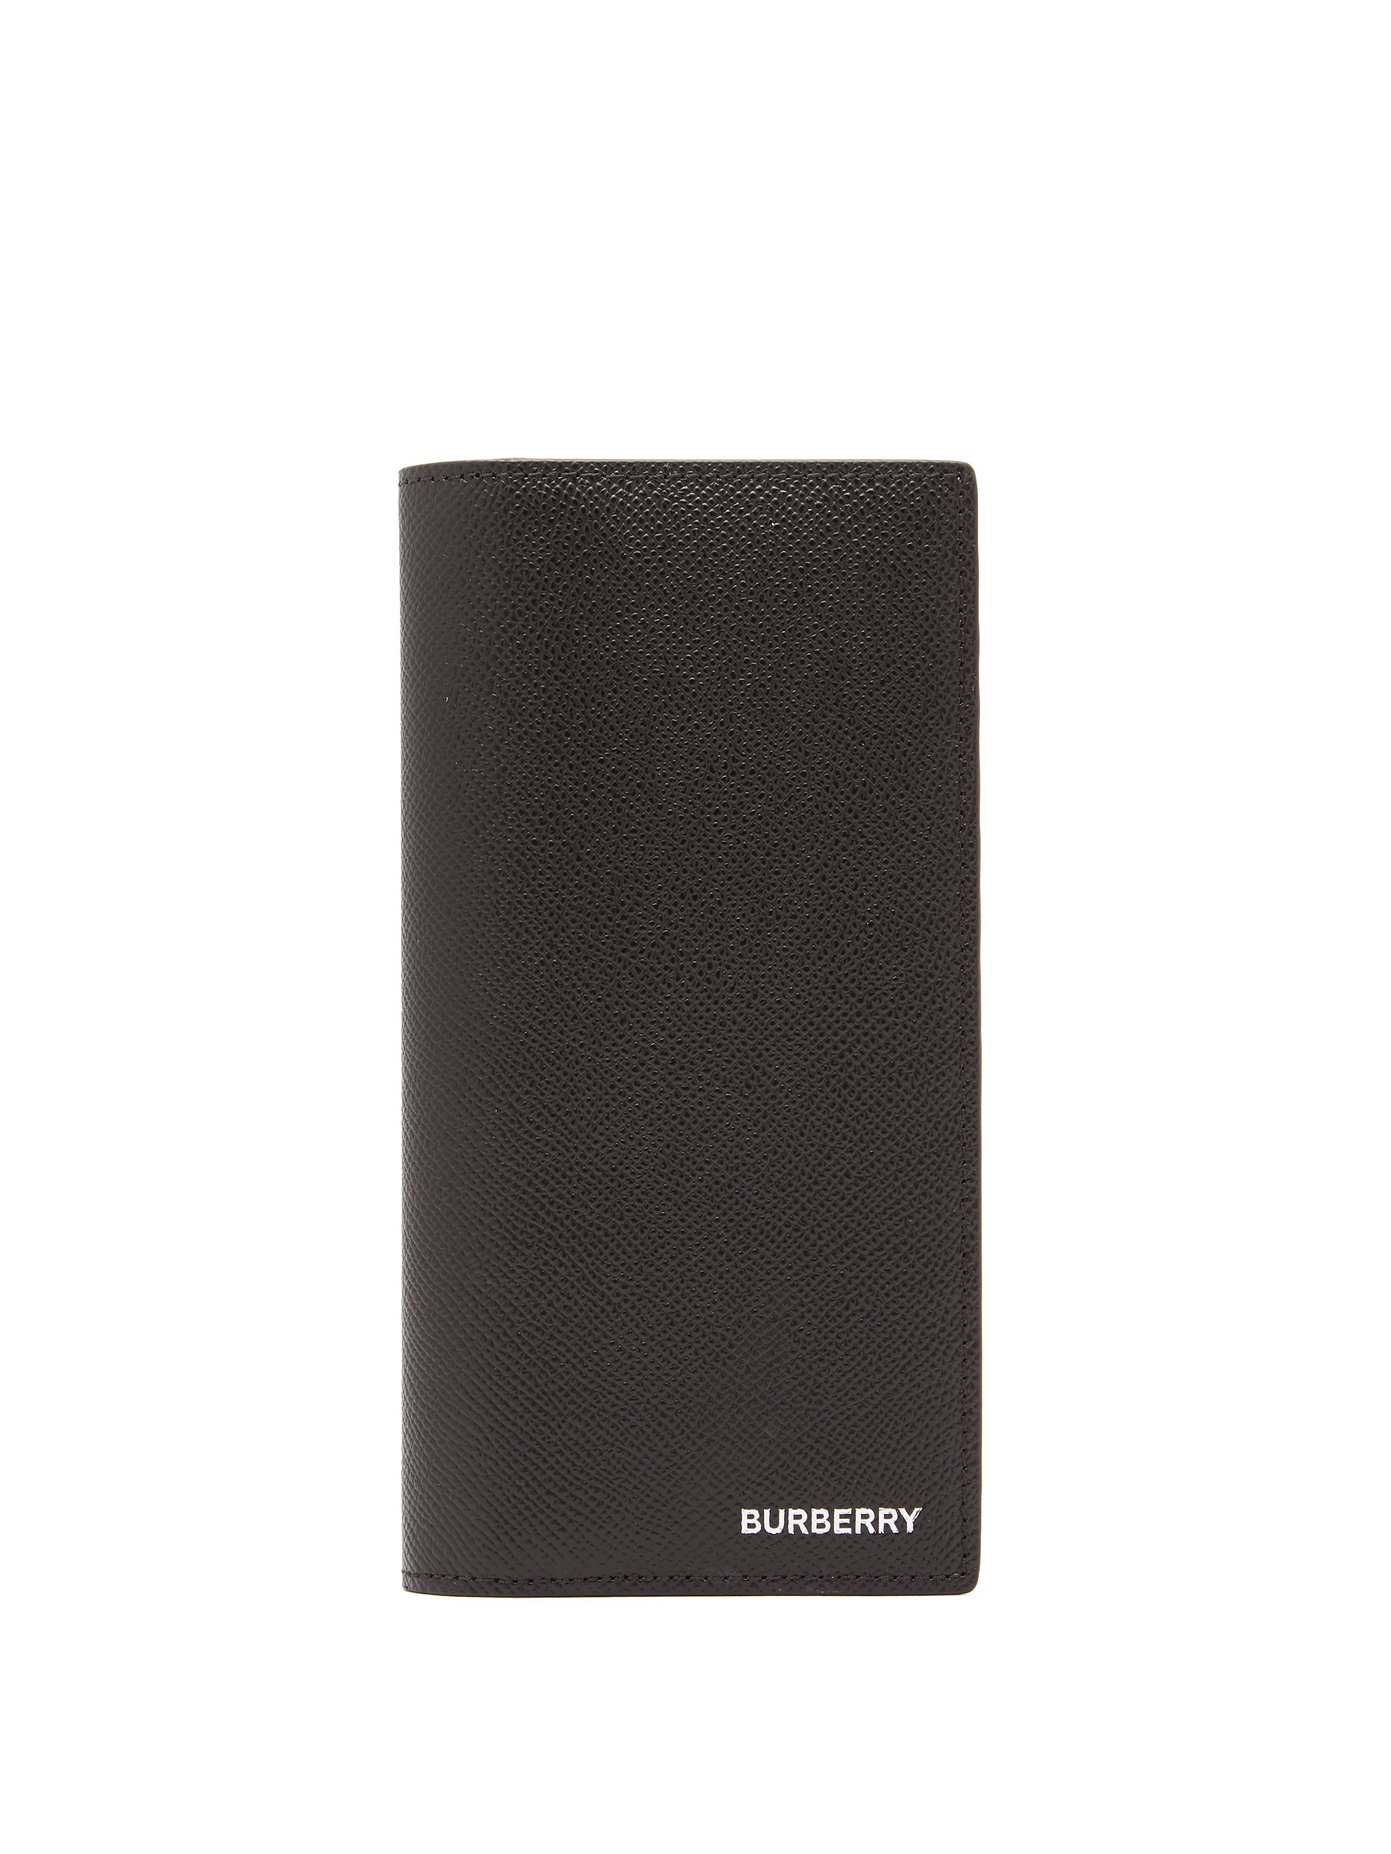 burberry wallet discount